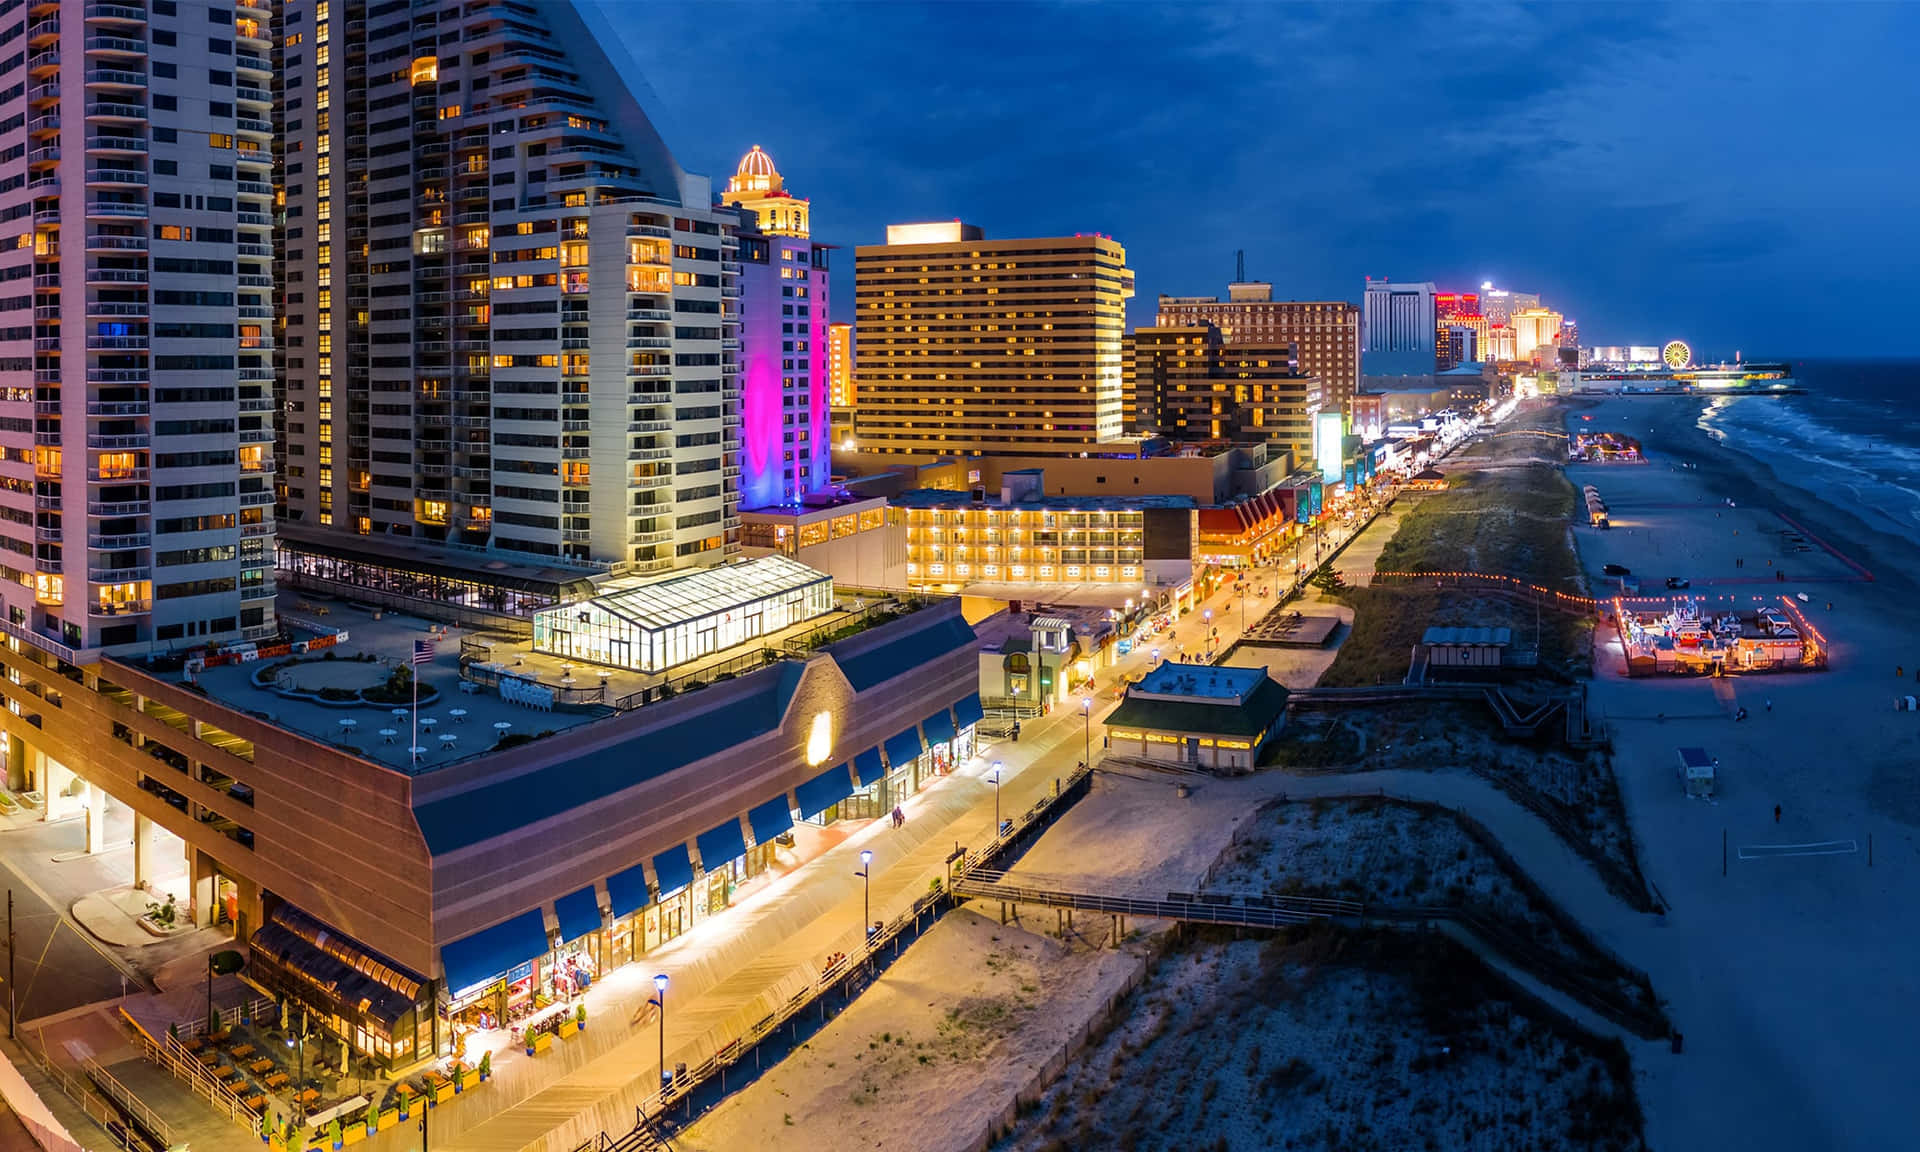 Imagende Los Edificios Y La Playa De Atlantic City De Noche.